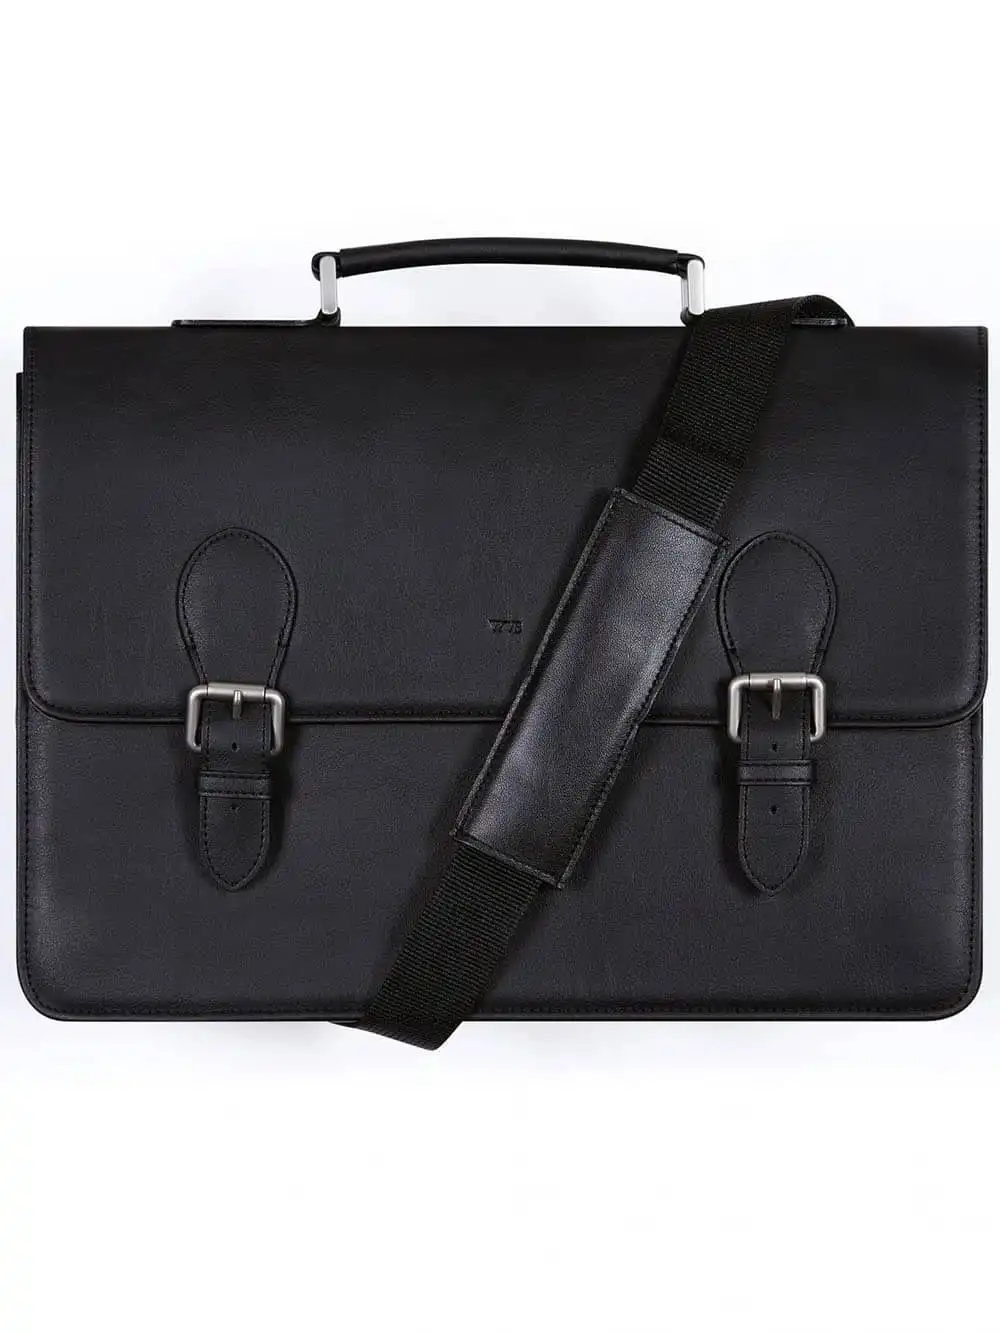 Wills briefcase